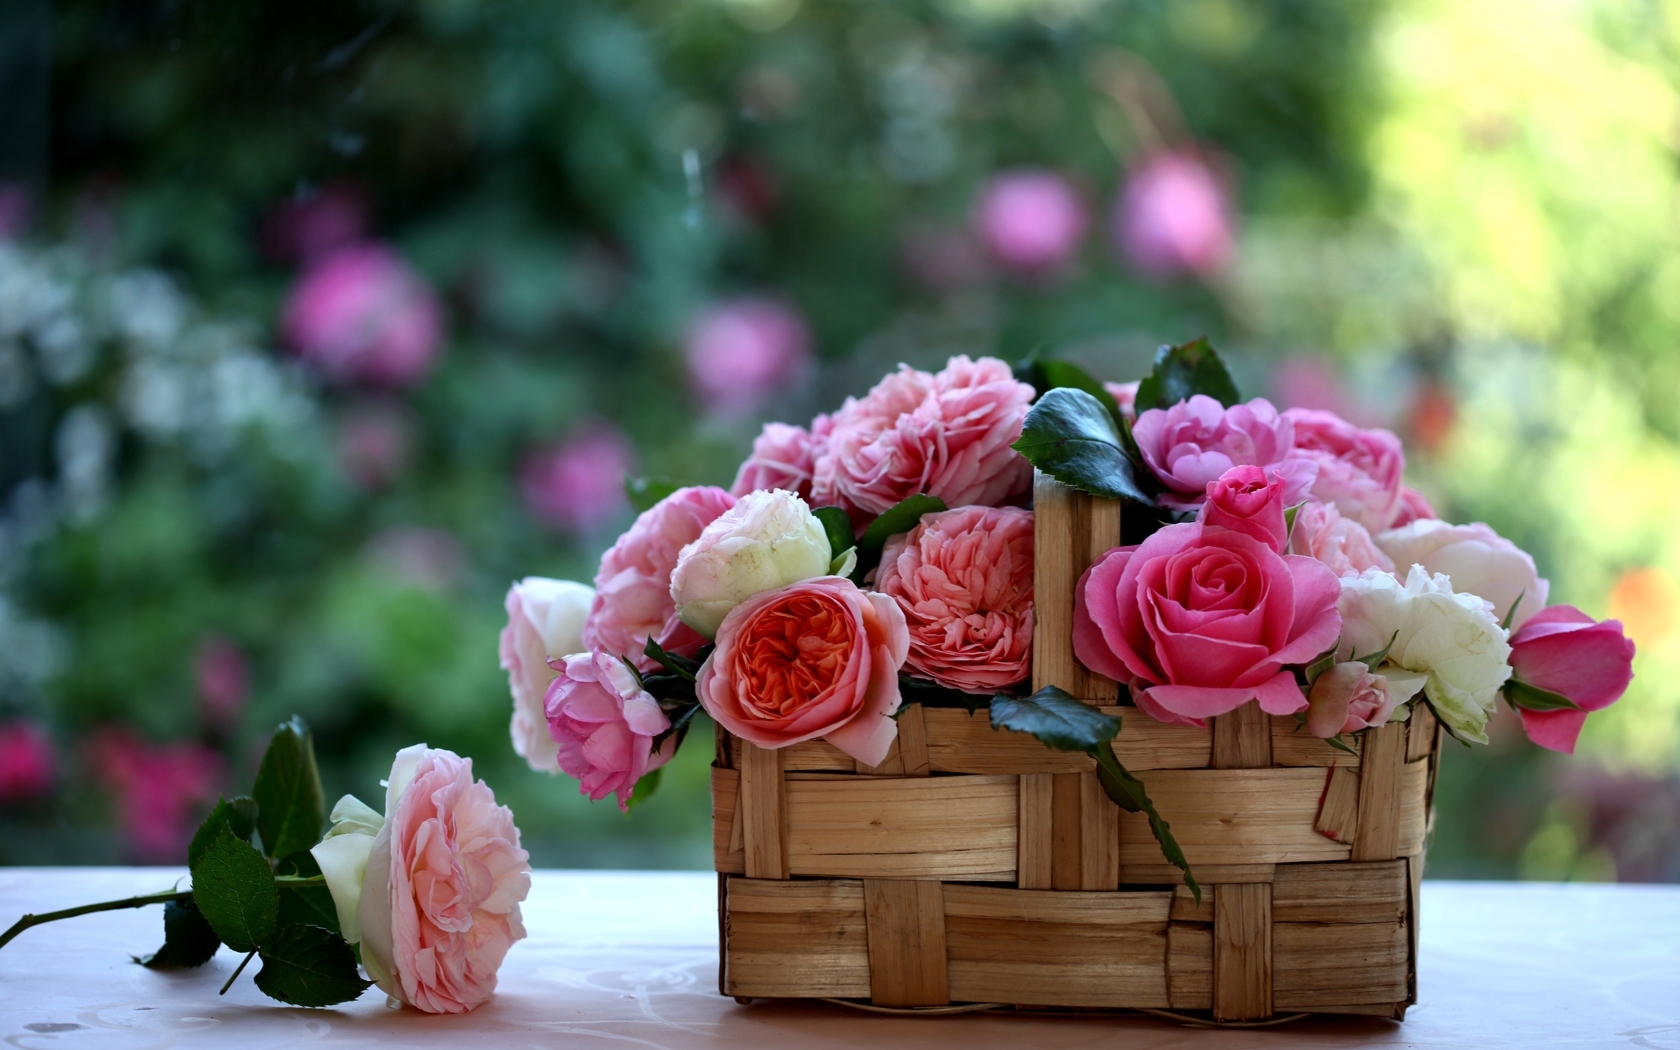 Природа, пейзаж Цветы розы, корзинка, лукошко красивые обои рабочий стол